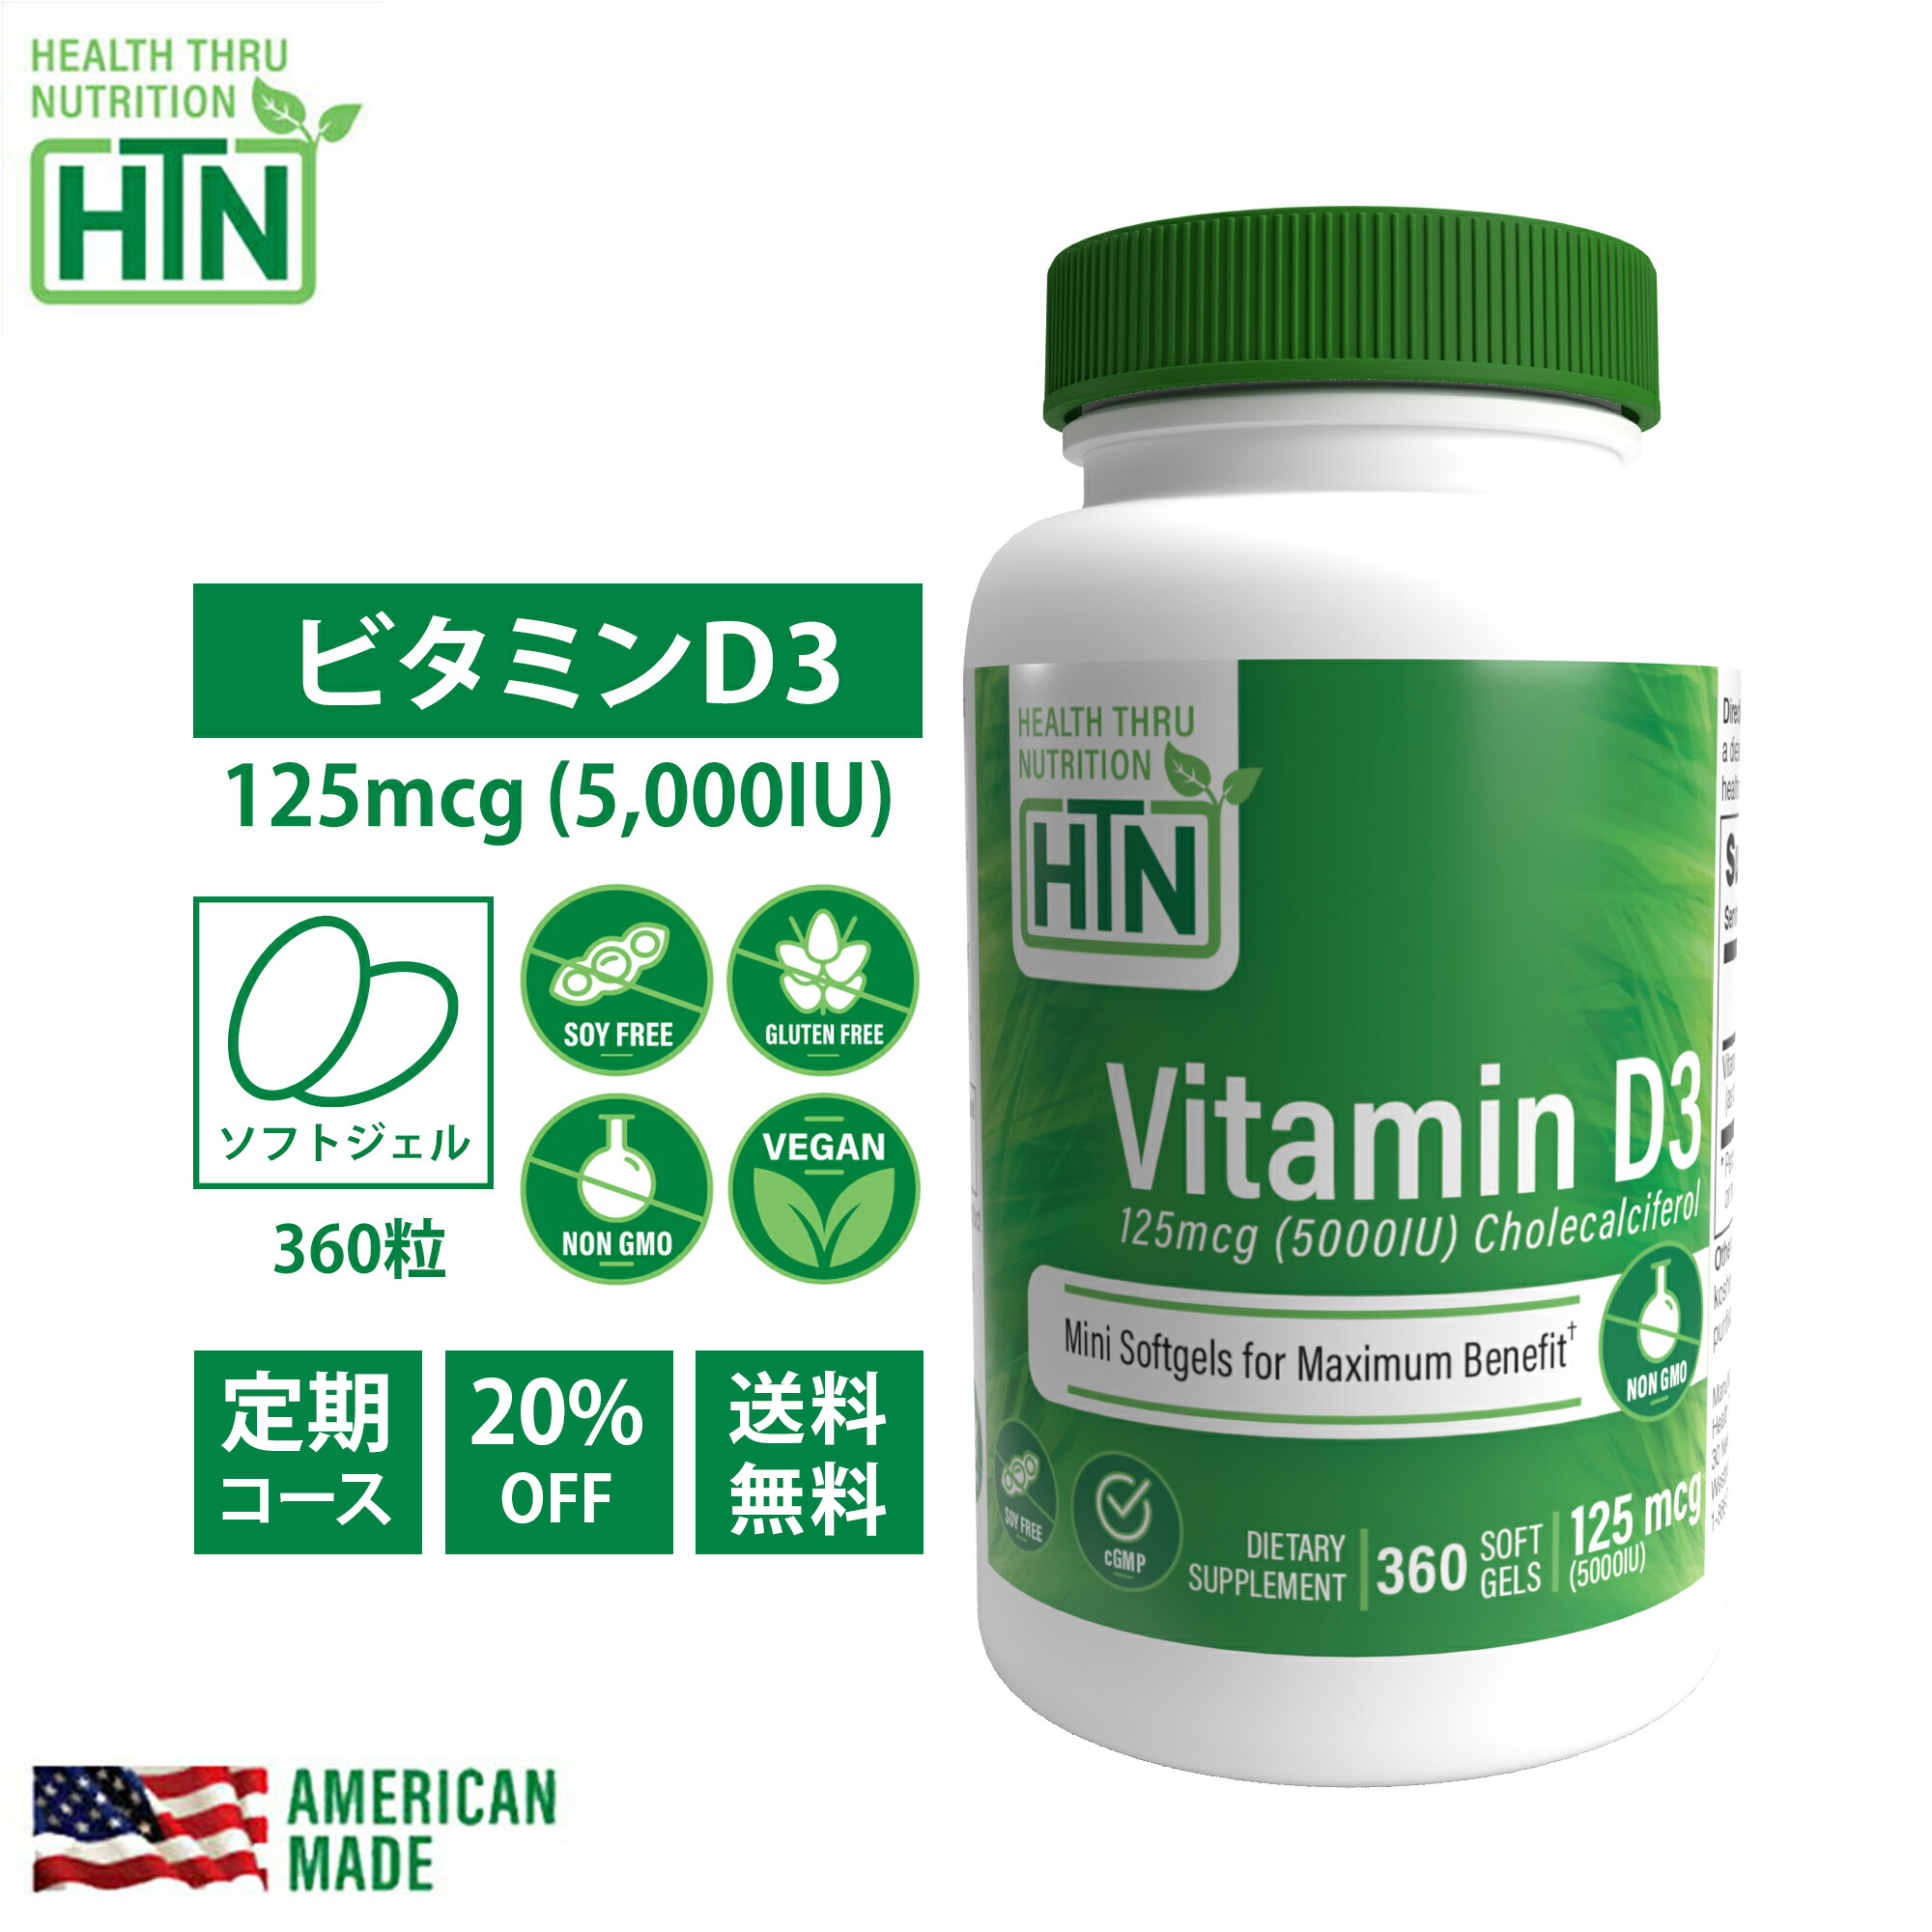 Vitamin D3 ビタミンD3 125mcg 5,000iu NON-GMO 360粒 1年分 アメリカ製 ソフトジェルカプセル サプリメント サプリ ビタミンd ビタミンd3 健康食品 ビタミン ビタミンサプリメント 健康 米国 USA